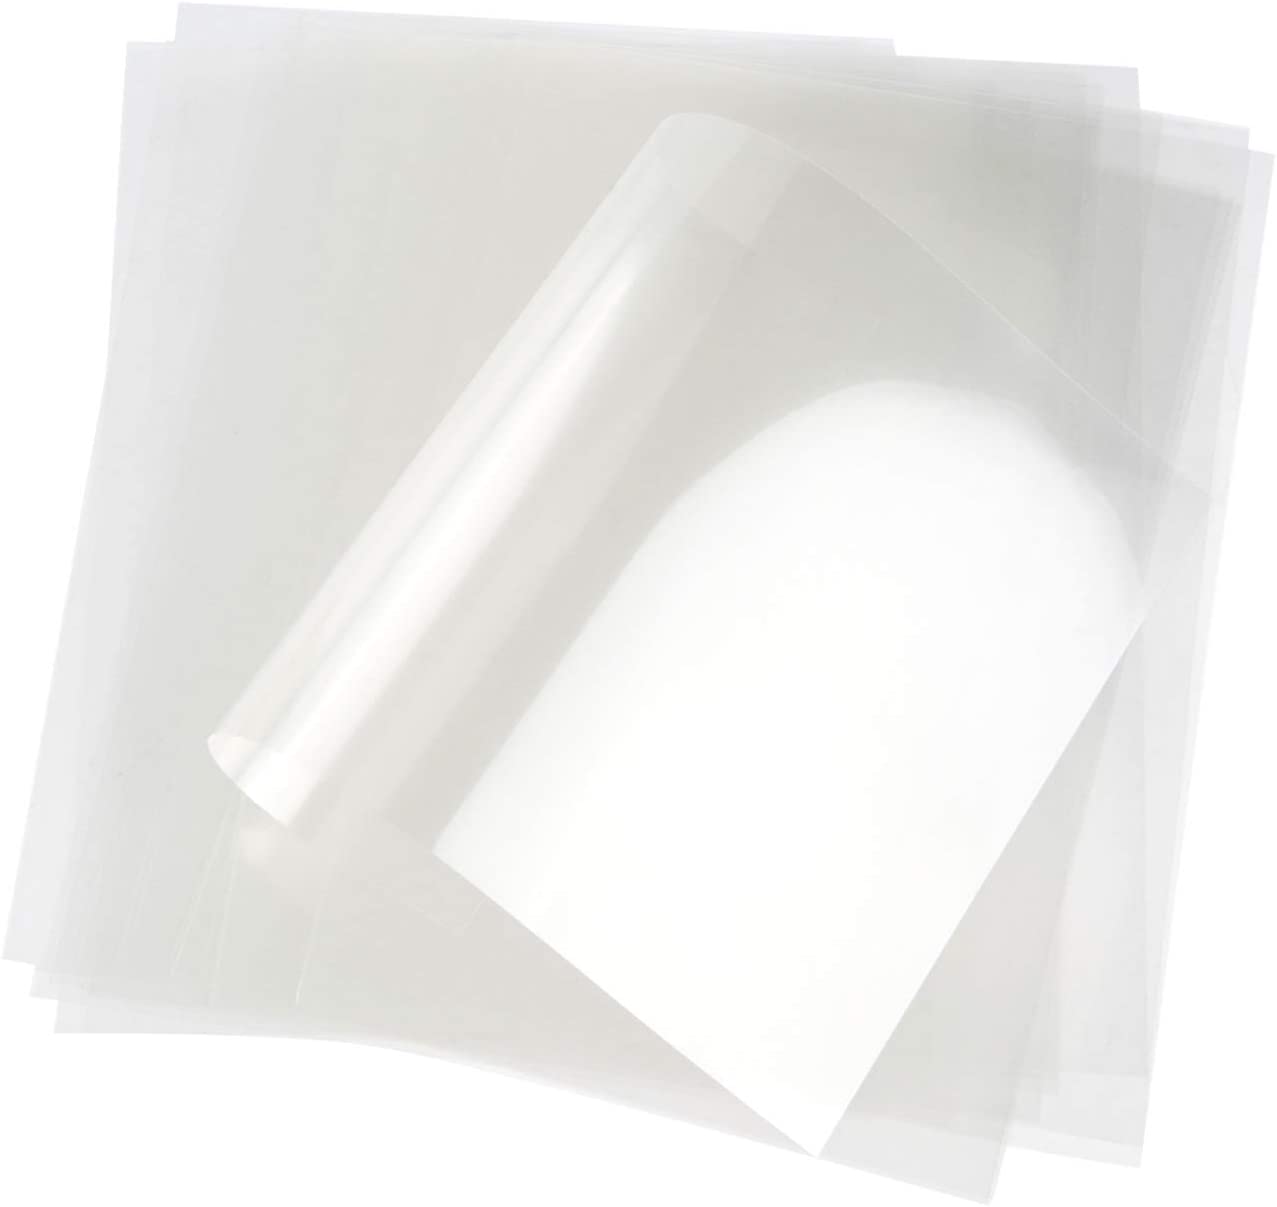  Lámina transparente de acetato pesado de 9 x 12 pulgadas,  paquete de 10 hojas : Arte y Manualidades